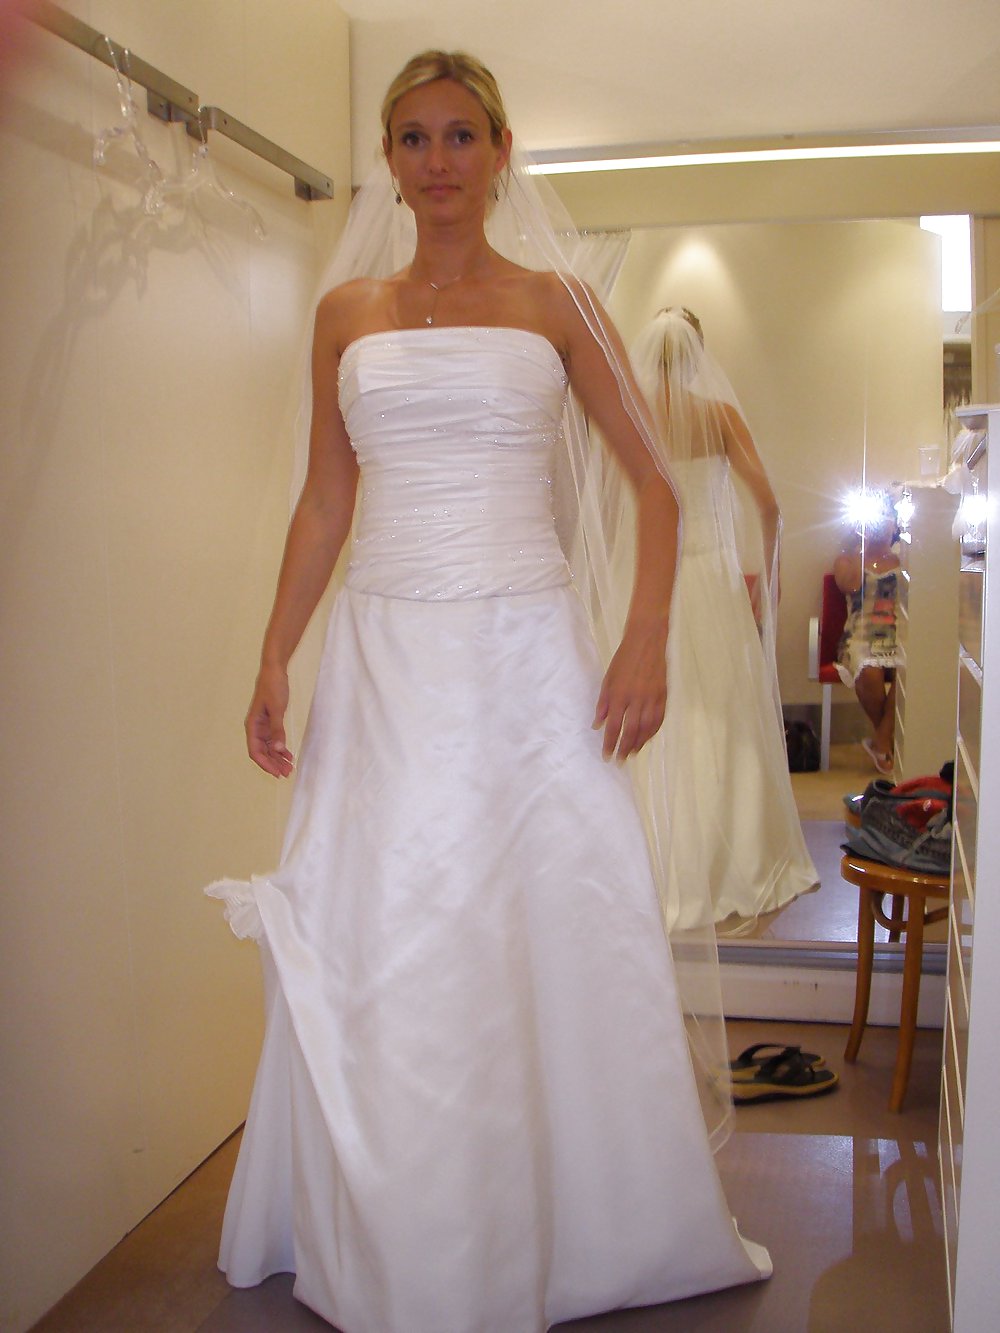 Digital Voyeur - Sexy Danish bride #37279421